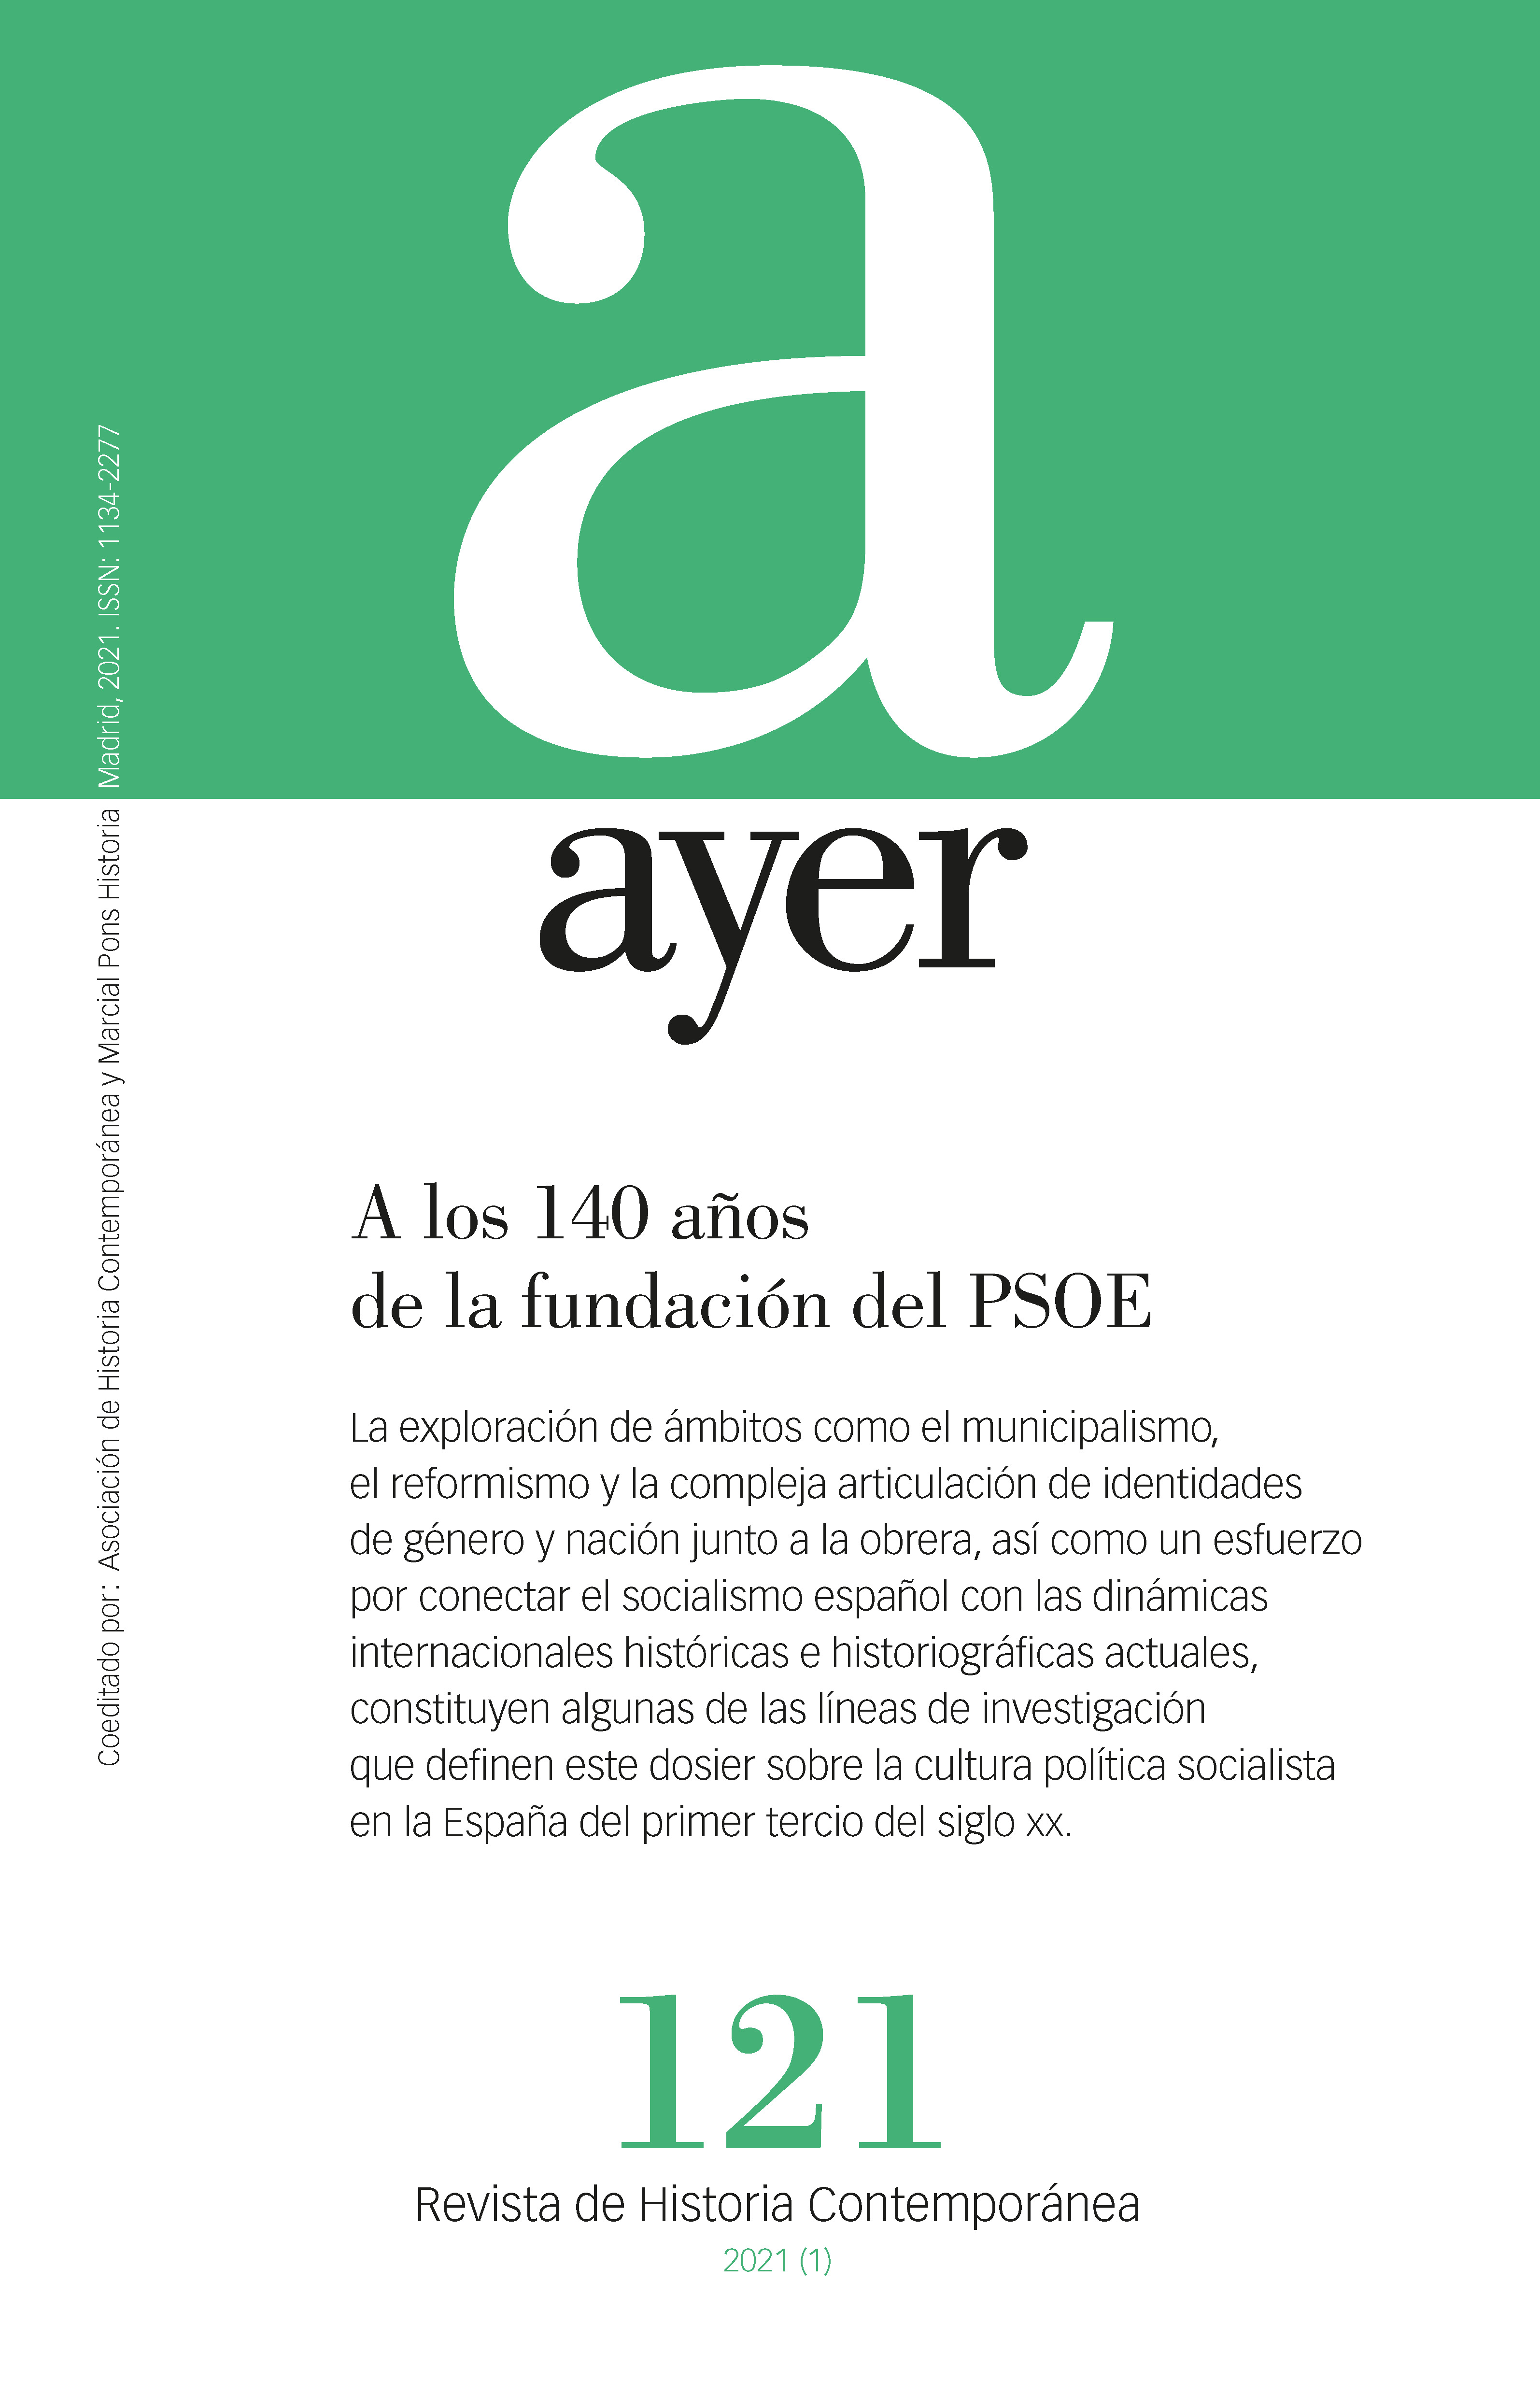 A los 140 años de la fundación del PSOE